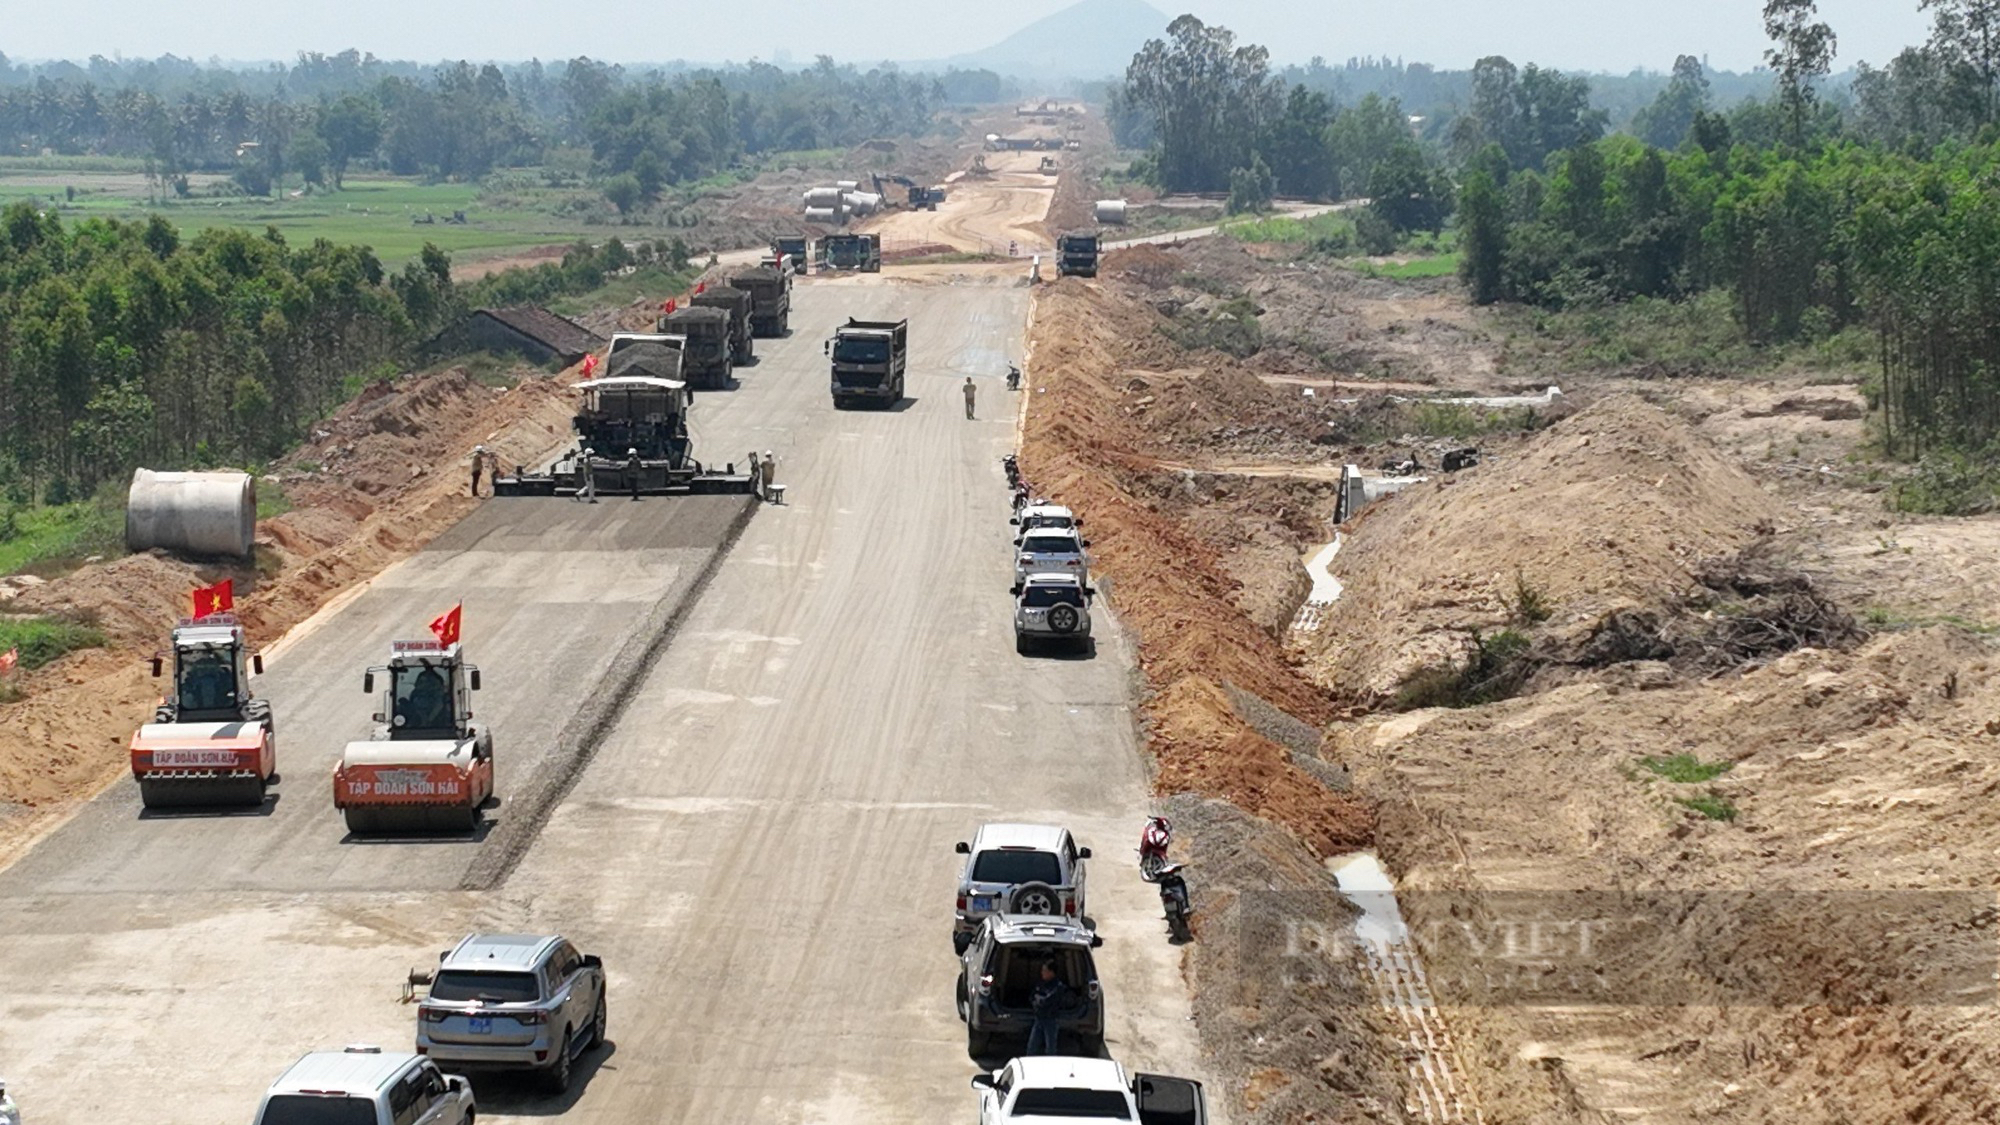 Cao tốc bị "cản bước" vì rừng, Phó Thủ tướng "chốt" tháng 1, đến cuối tháng 2 Bộ TNMT chưa báo cáo - Ảnh 3.